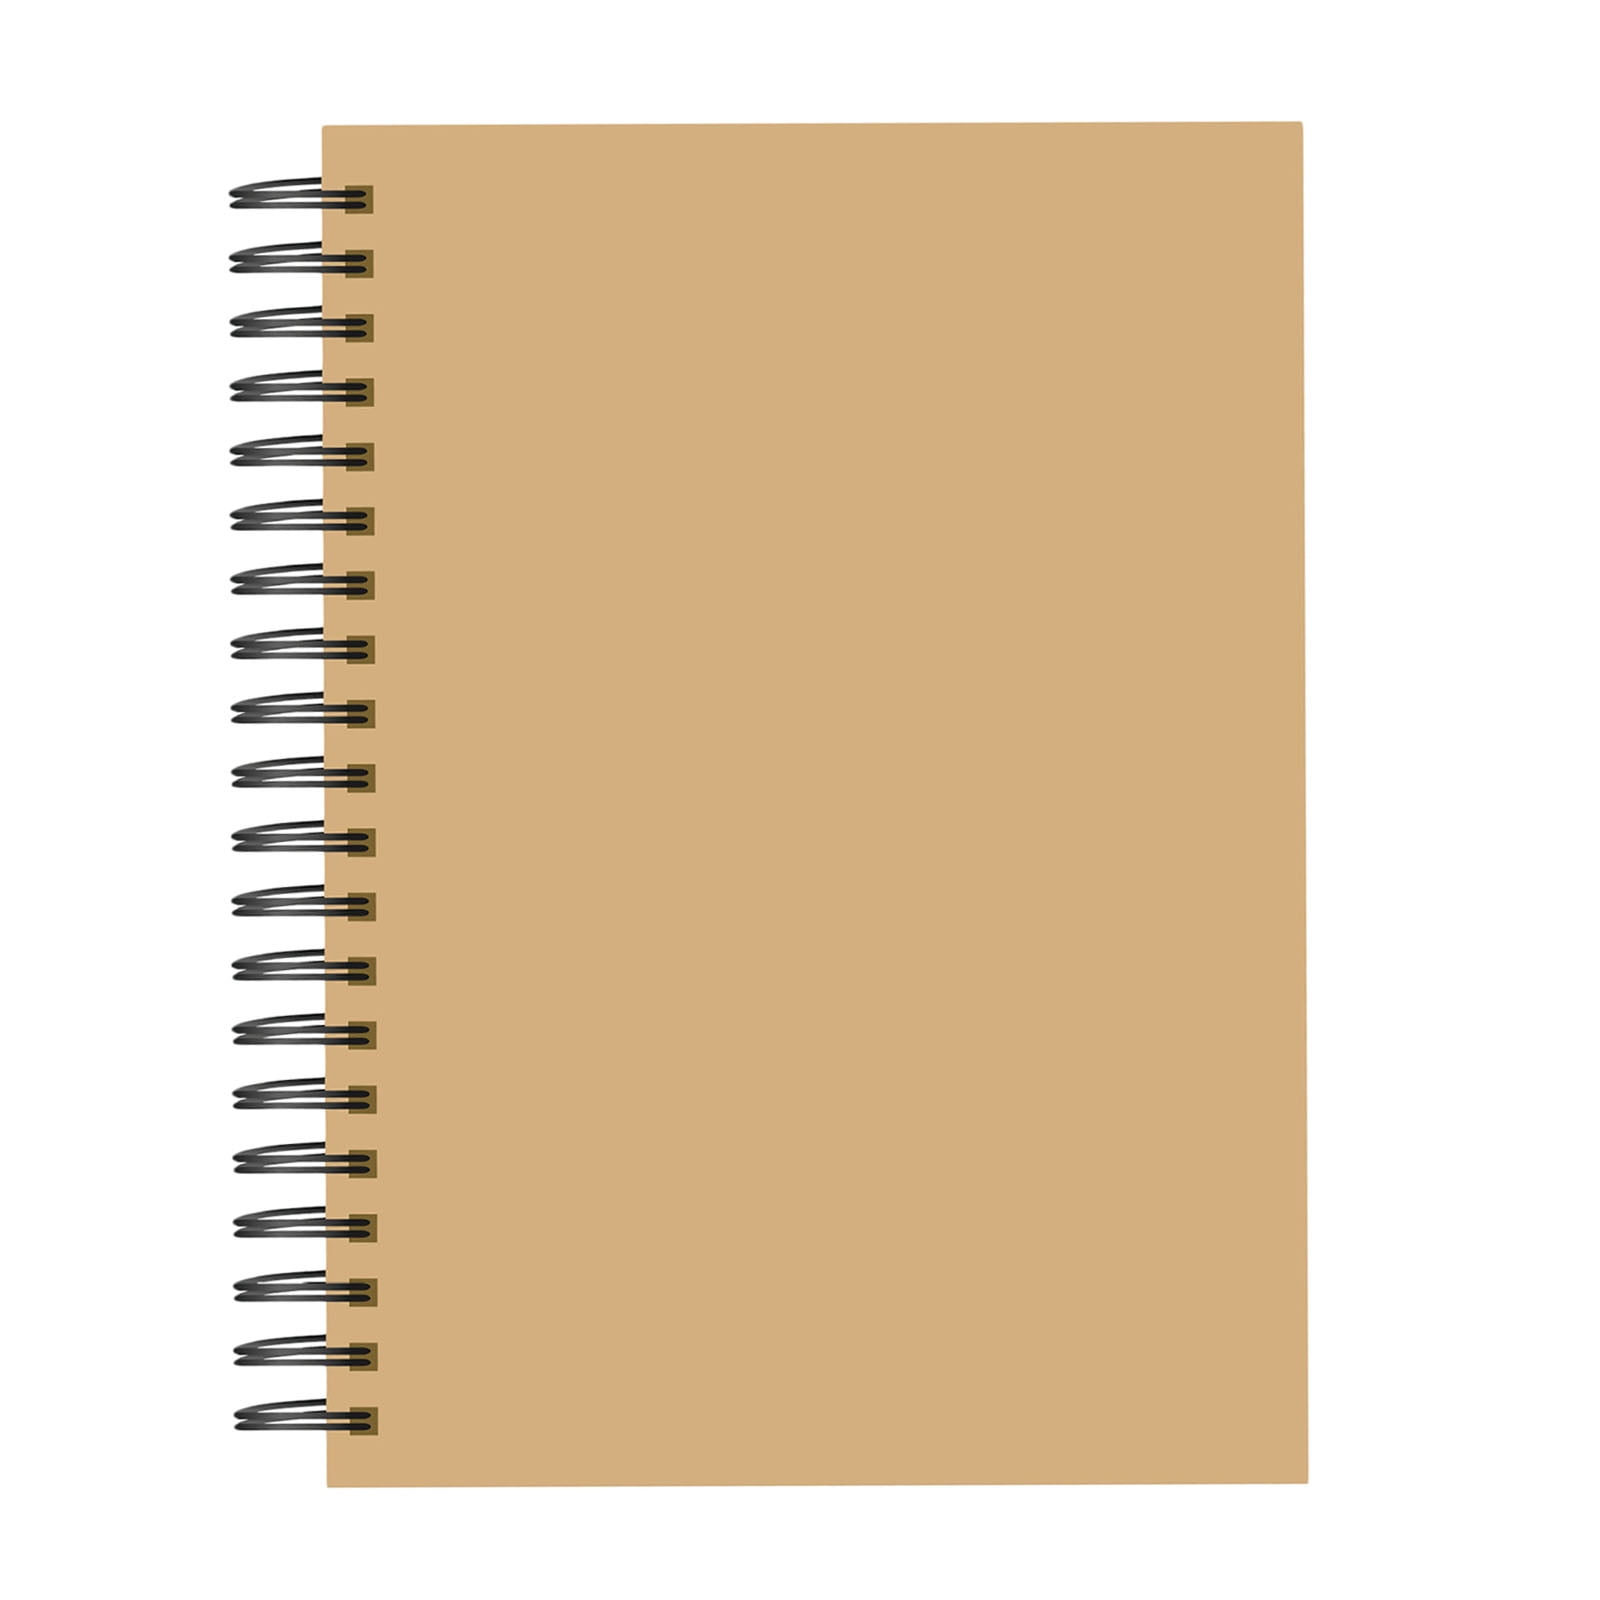 16k Sketch Pad Book White Paper Artist Sketching Drawing Doodling Art Craft 